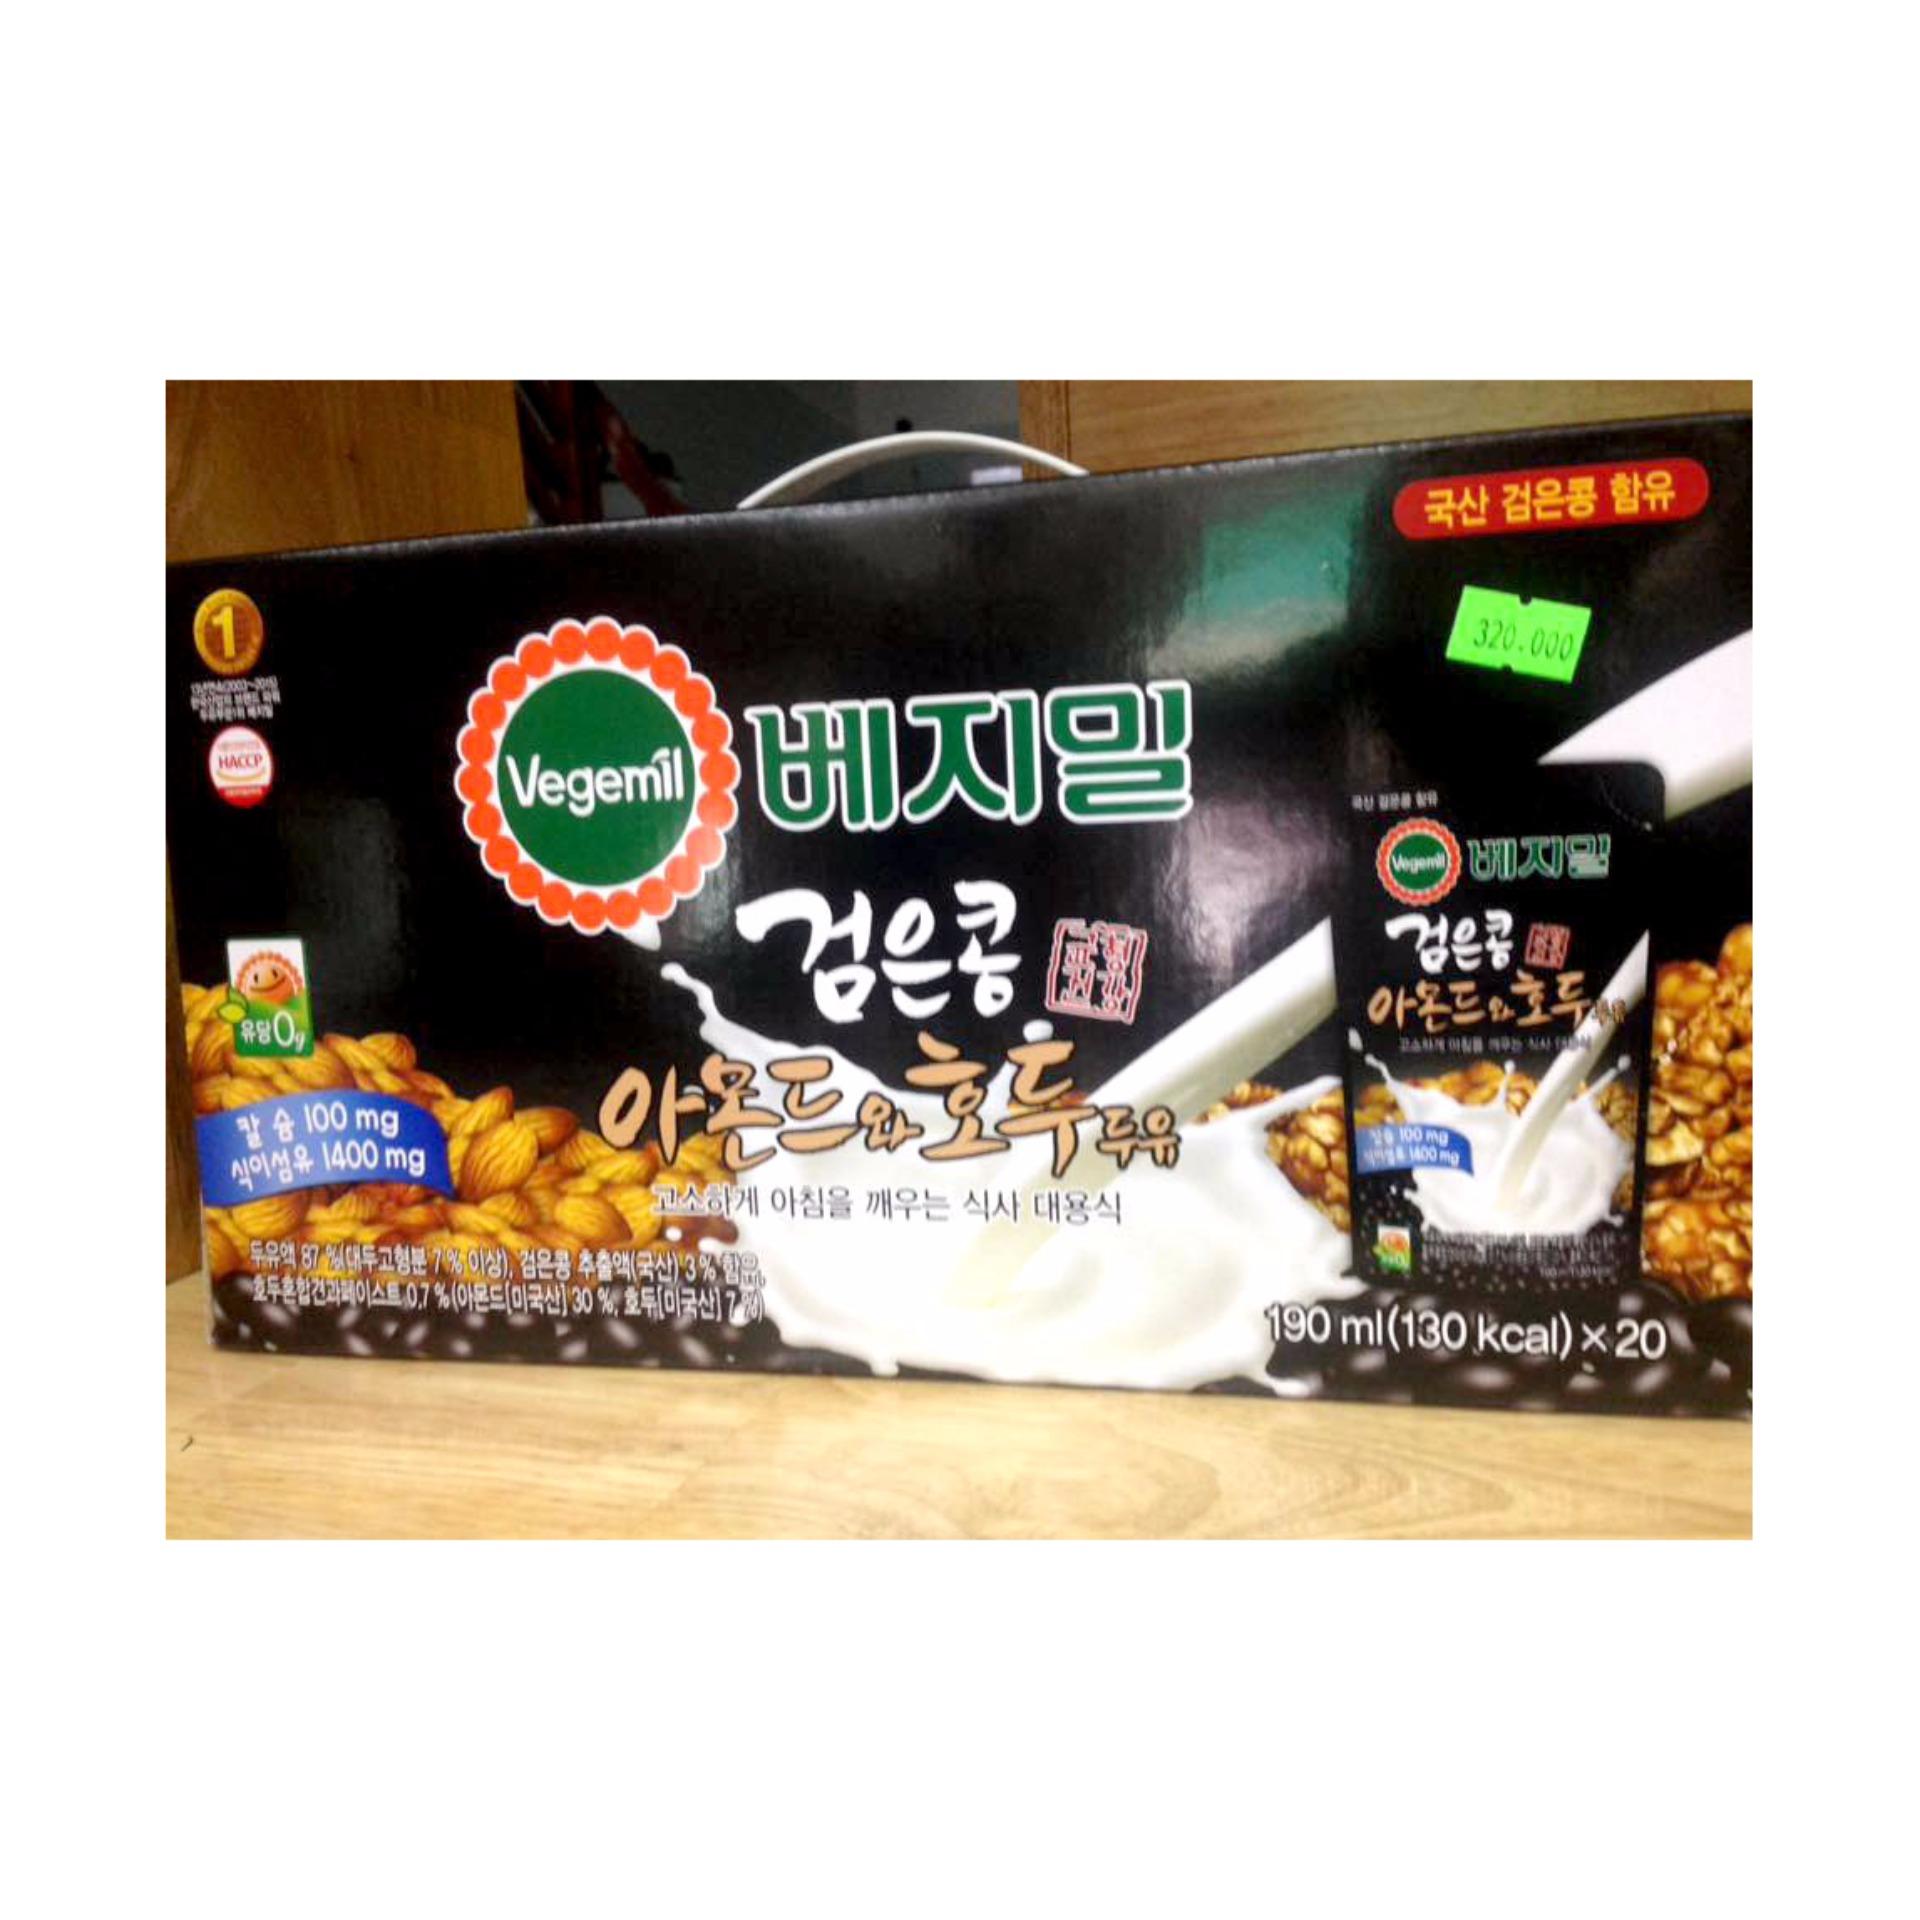 Sữa óc chó hạnh nhân Hàn quốc Vegemil xách 20 gói 190ml